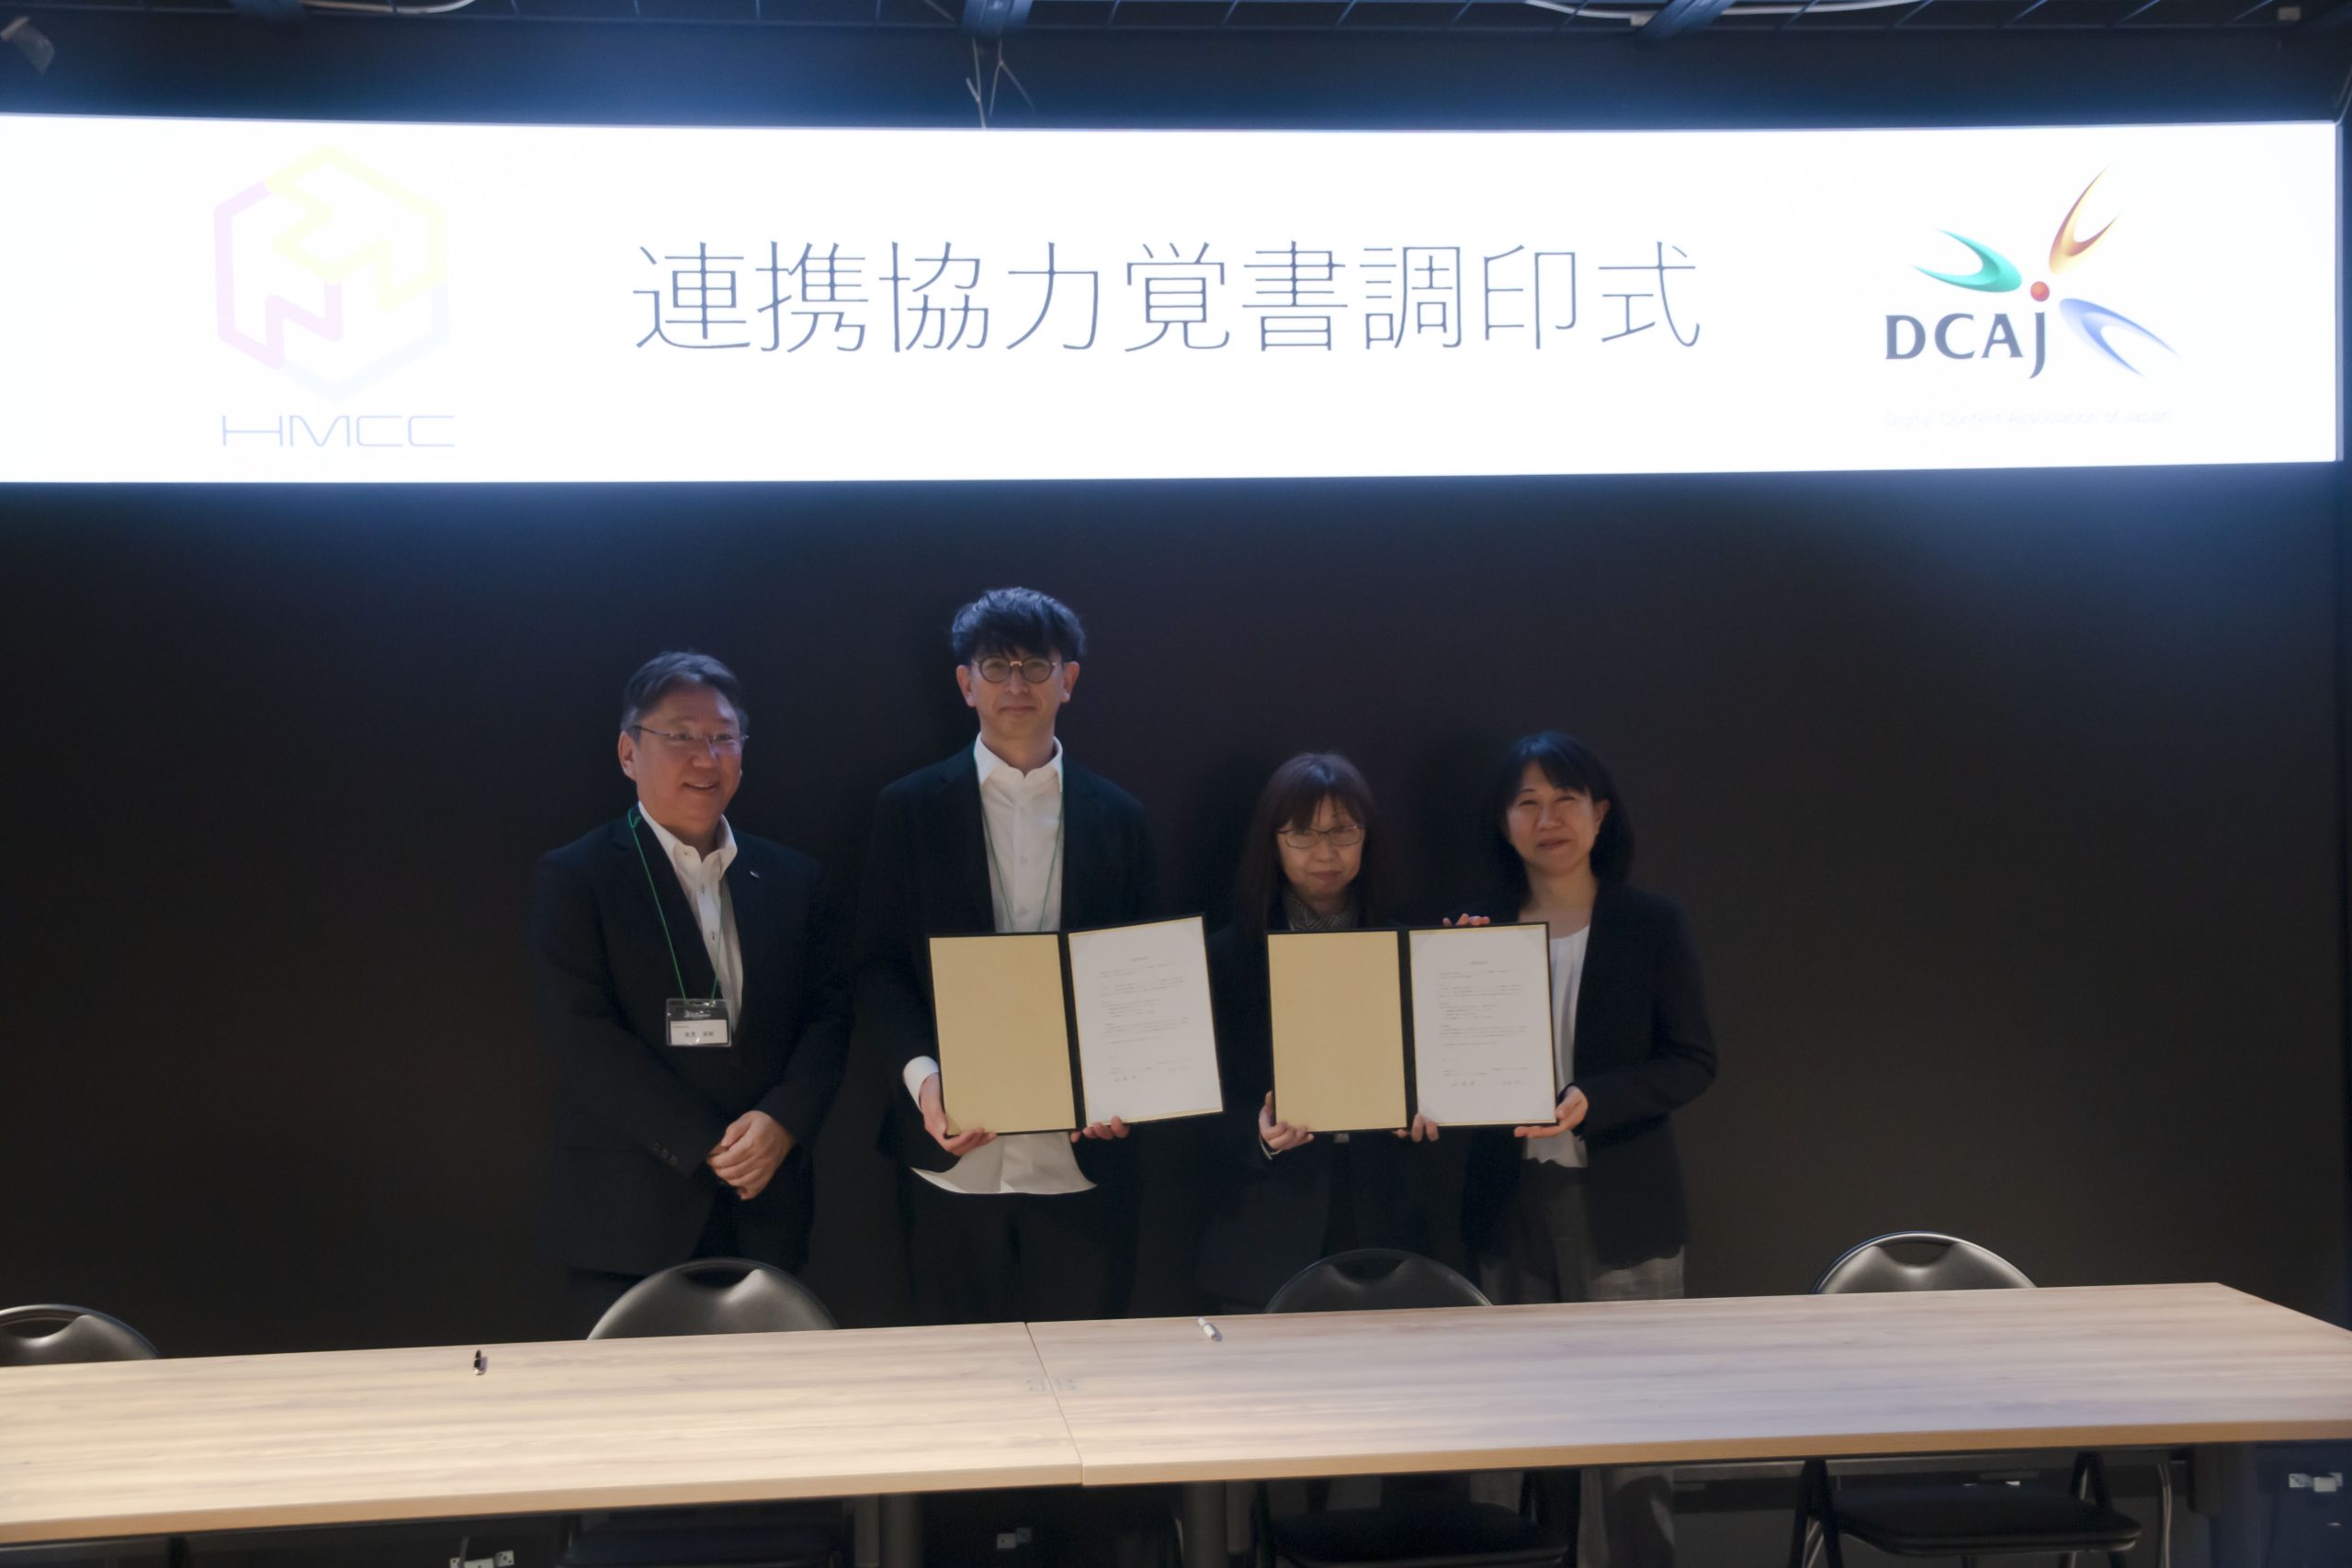 一般財団法人デジタルコンテンツ協会（DCAJ）と連携協定（MOU）を締結しました。